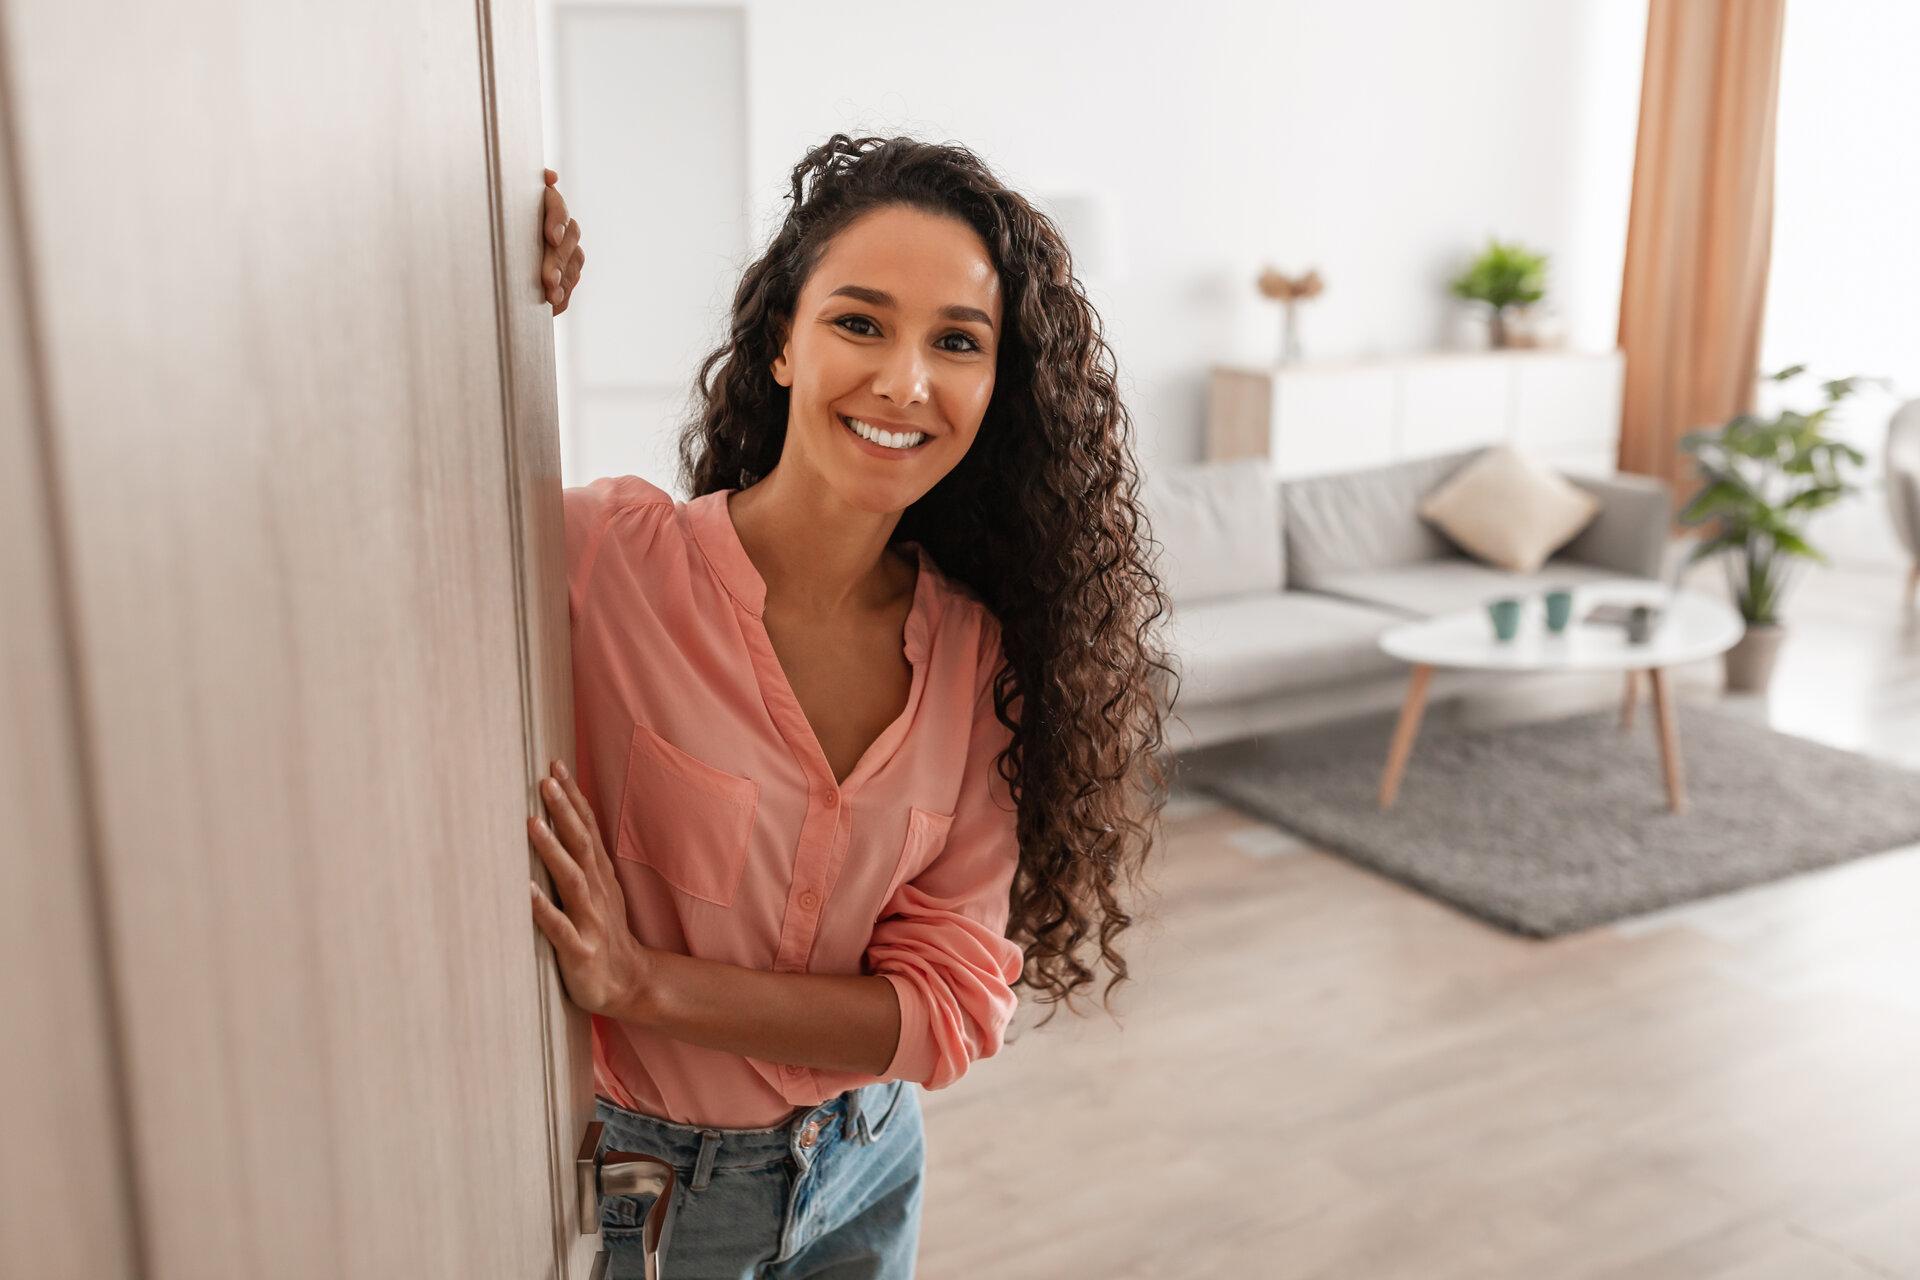 Porträt einer fröhlichen jungen Frau, die in der Tür eines neuen, modernen Hauses steht und einen Besucher empfängt, der sie einlädt, ihre stilvolle Wohnung zu betreten